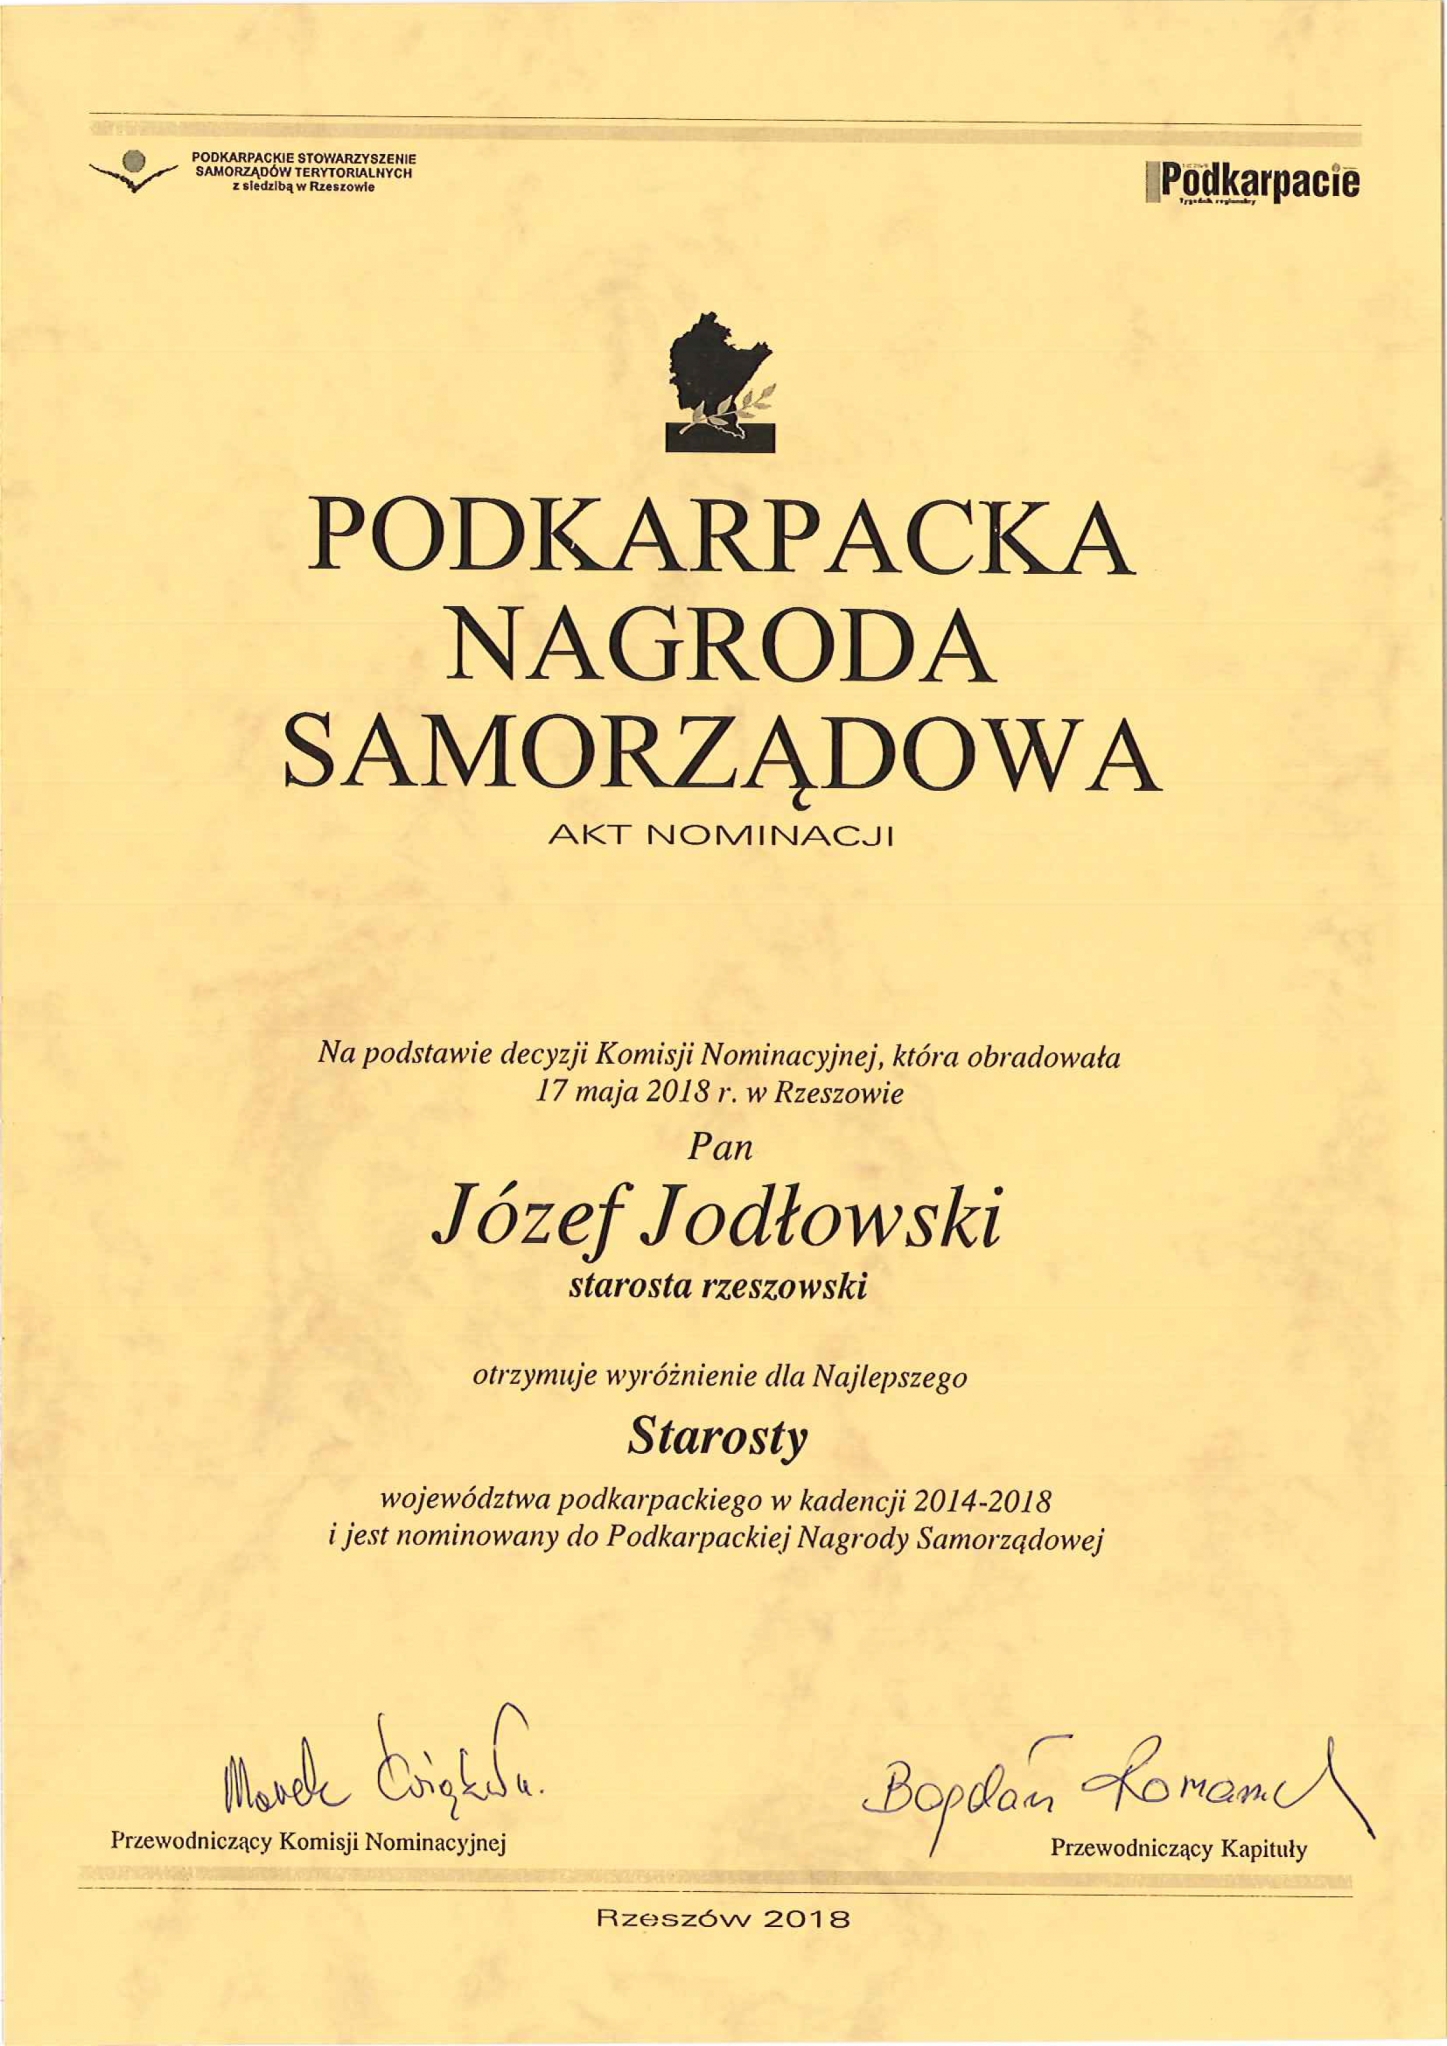 https://powiat.rzeszowski.pl/blog/2018/06/20/powiat-rzeszowski-liderem-samorzadnosci-w-wojewodztwie-podkarpackim-w-2018-roku/201806110832-3-jpg/